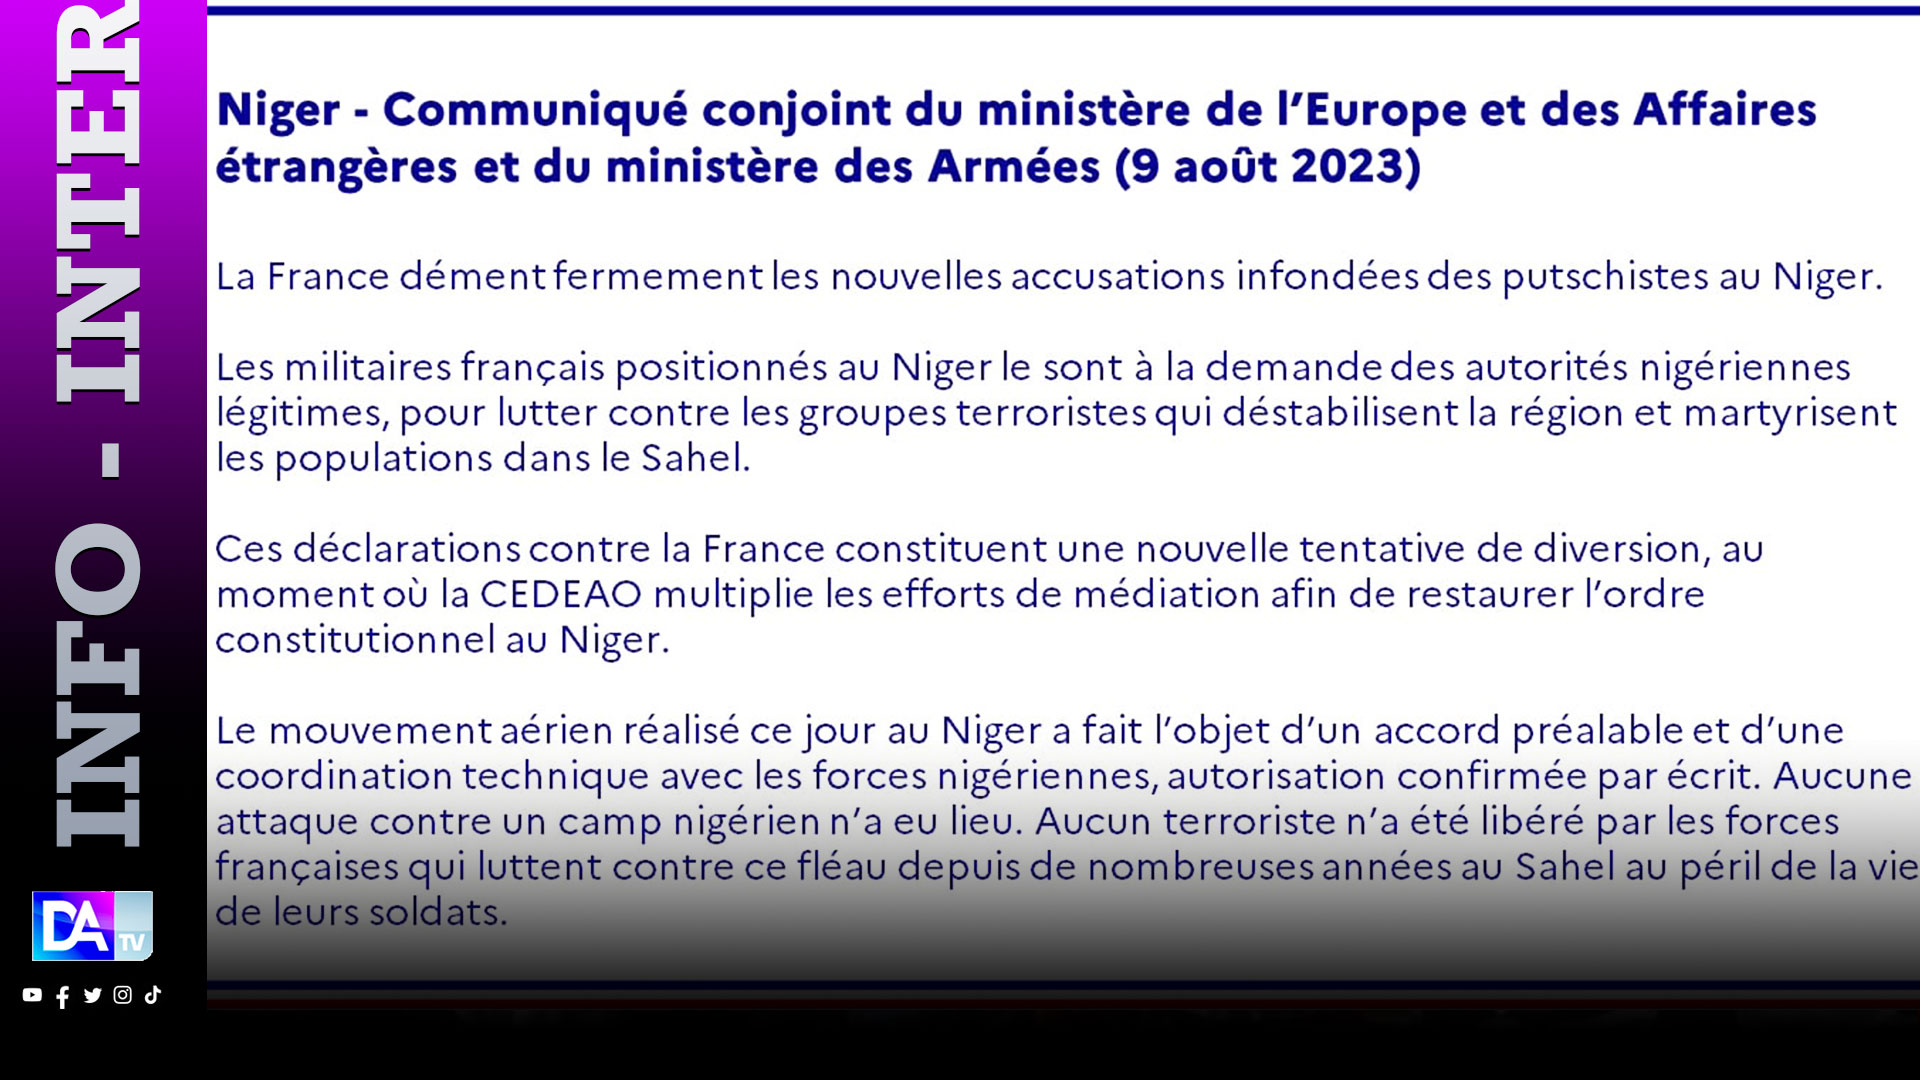 Libération de terroristes et attaque contre un camp nigérien: La France dément fermement les accusations des putschistes